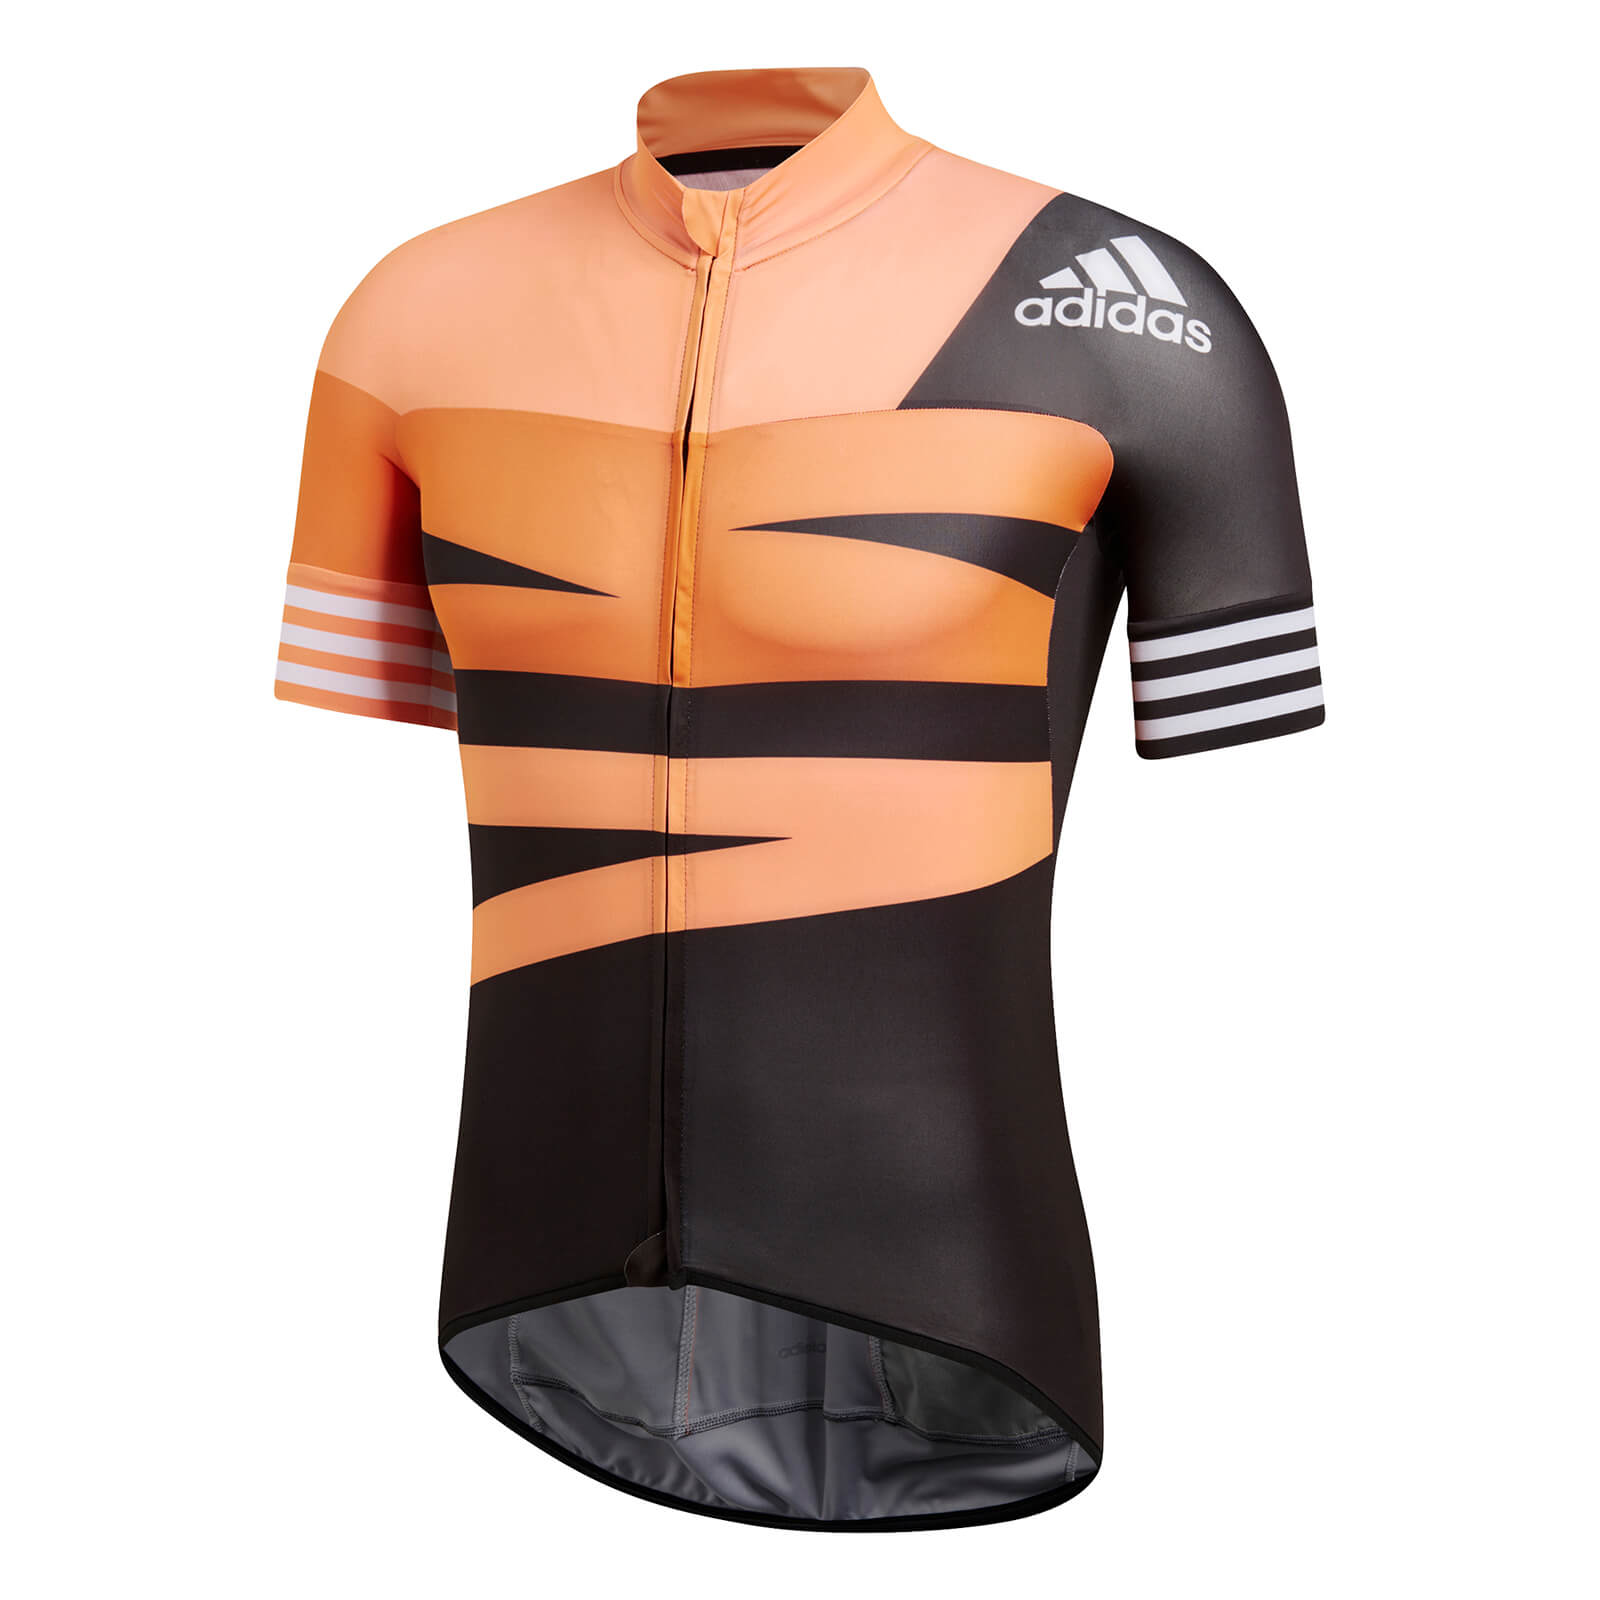 adidas cycling shirt